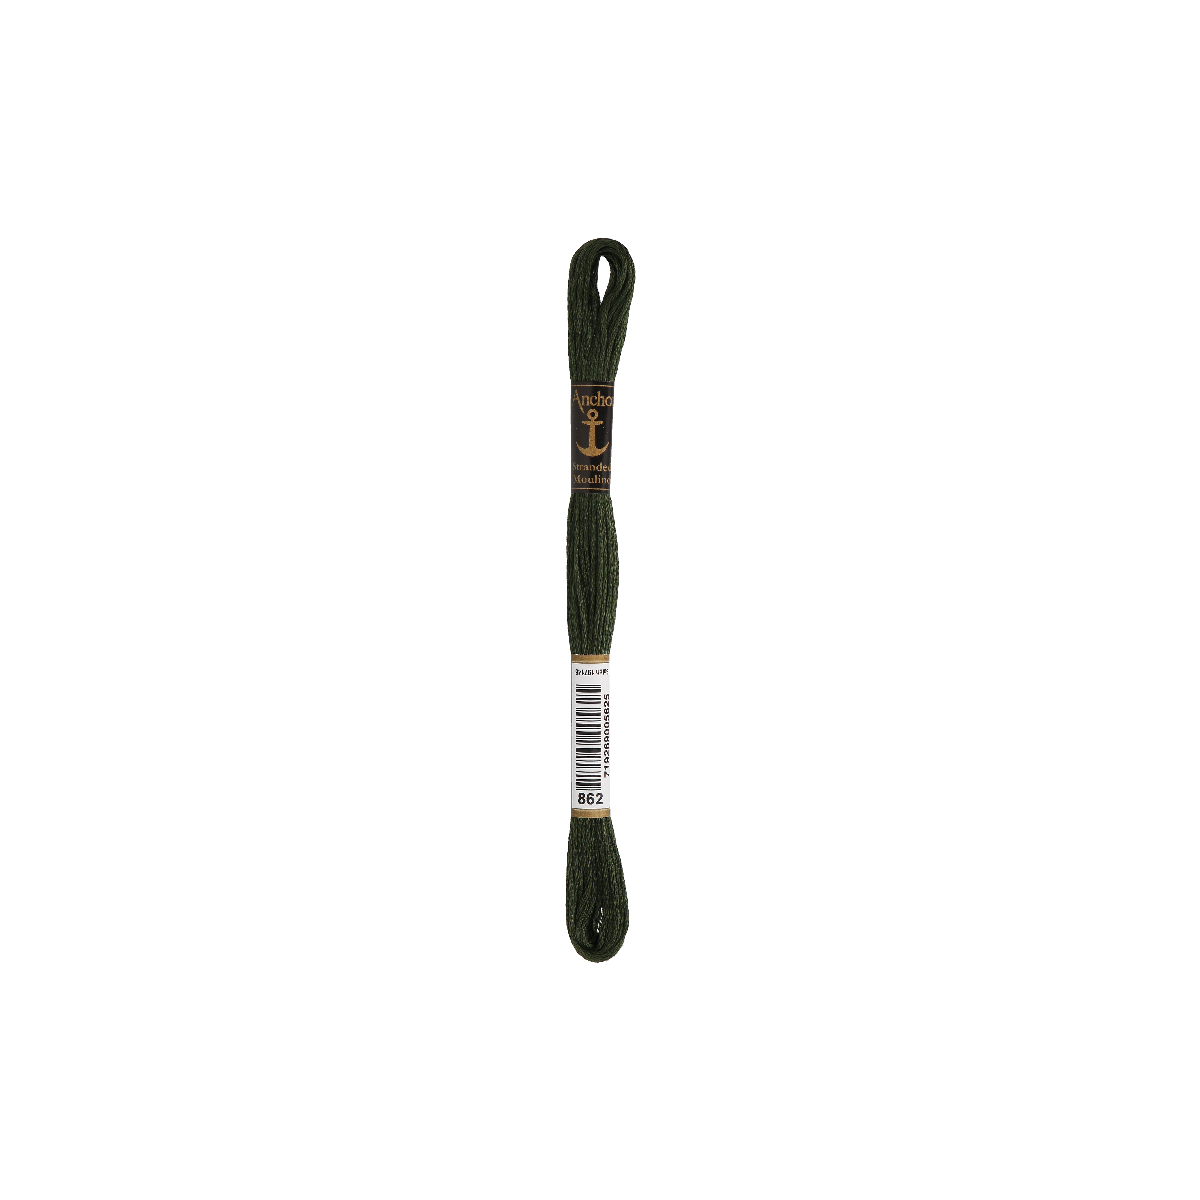 Anchor Sticktwist 8m, russisch groen, katoen, kleur 862,...